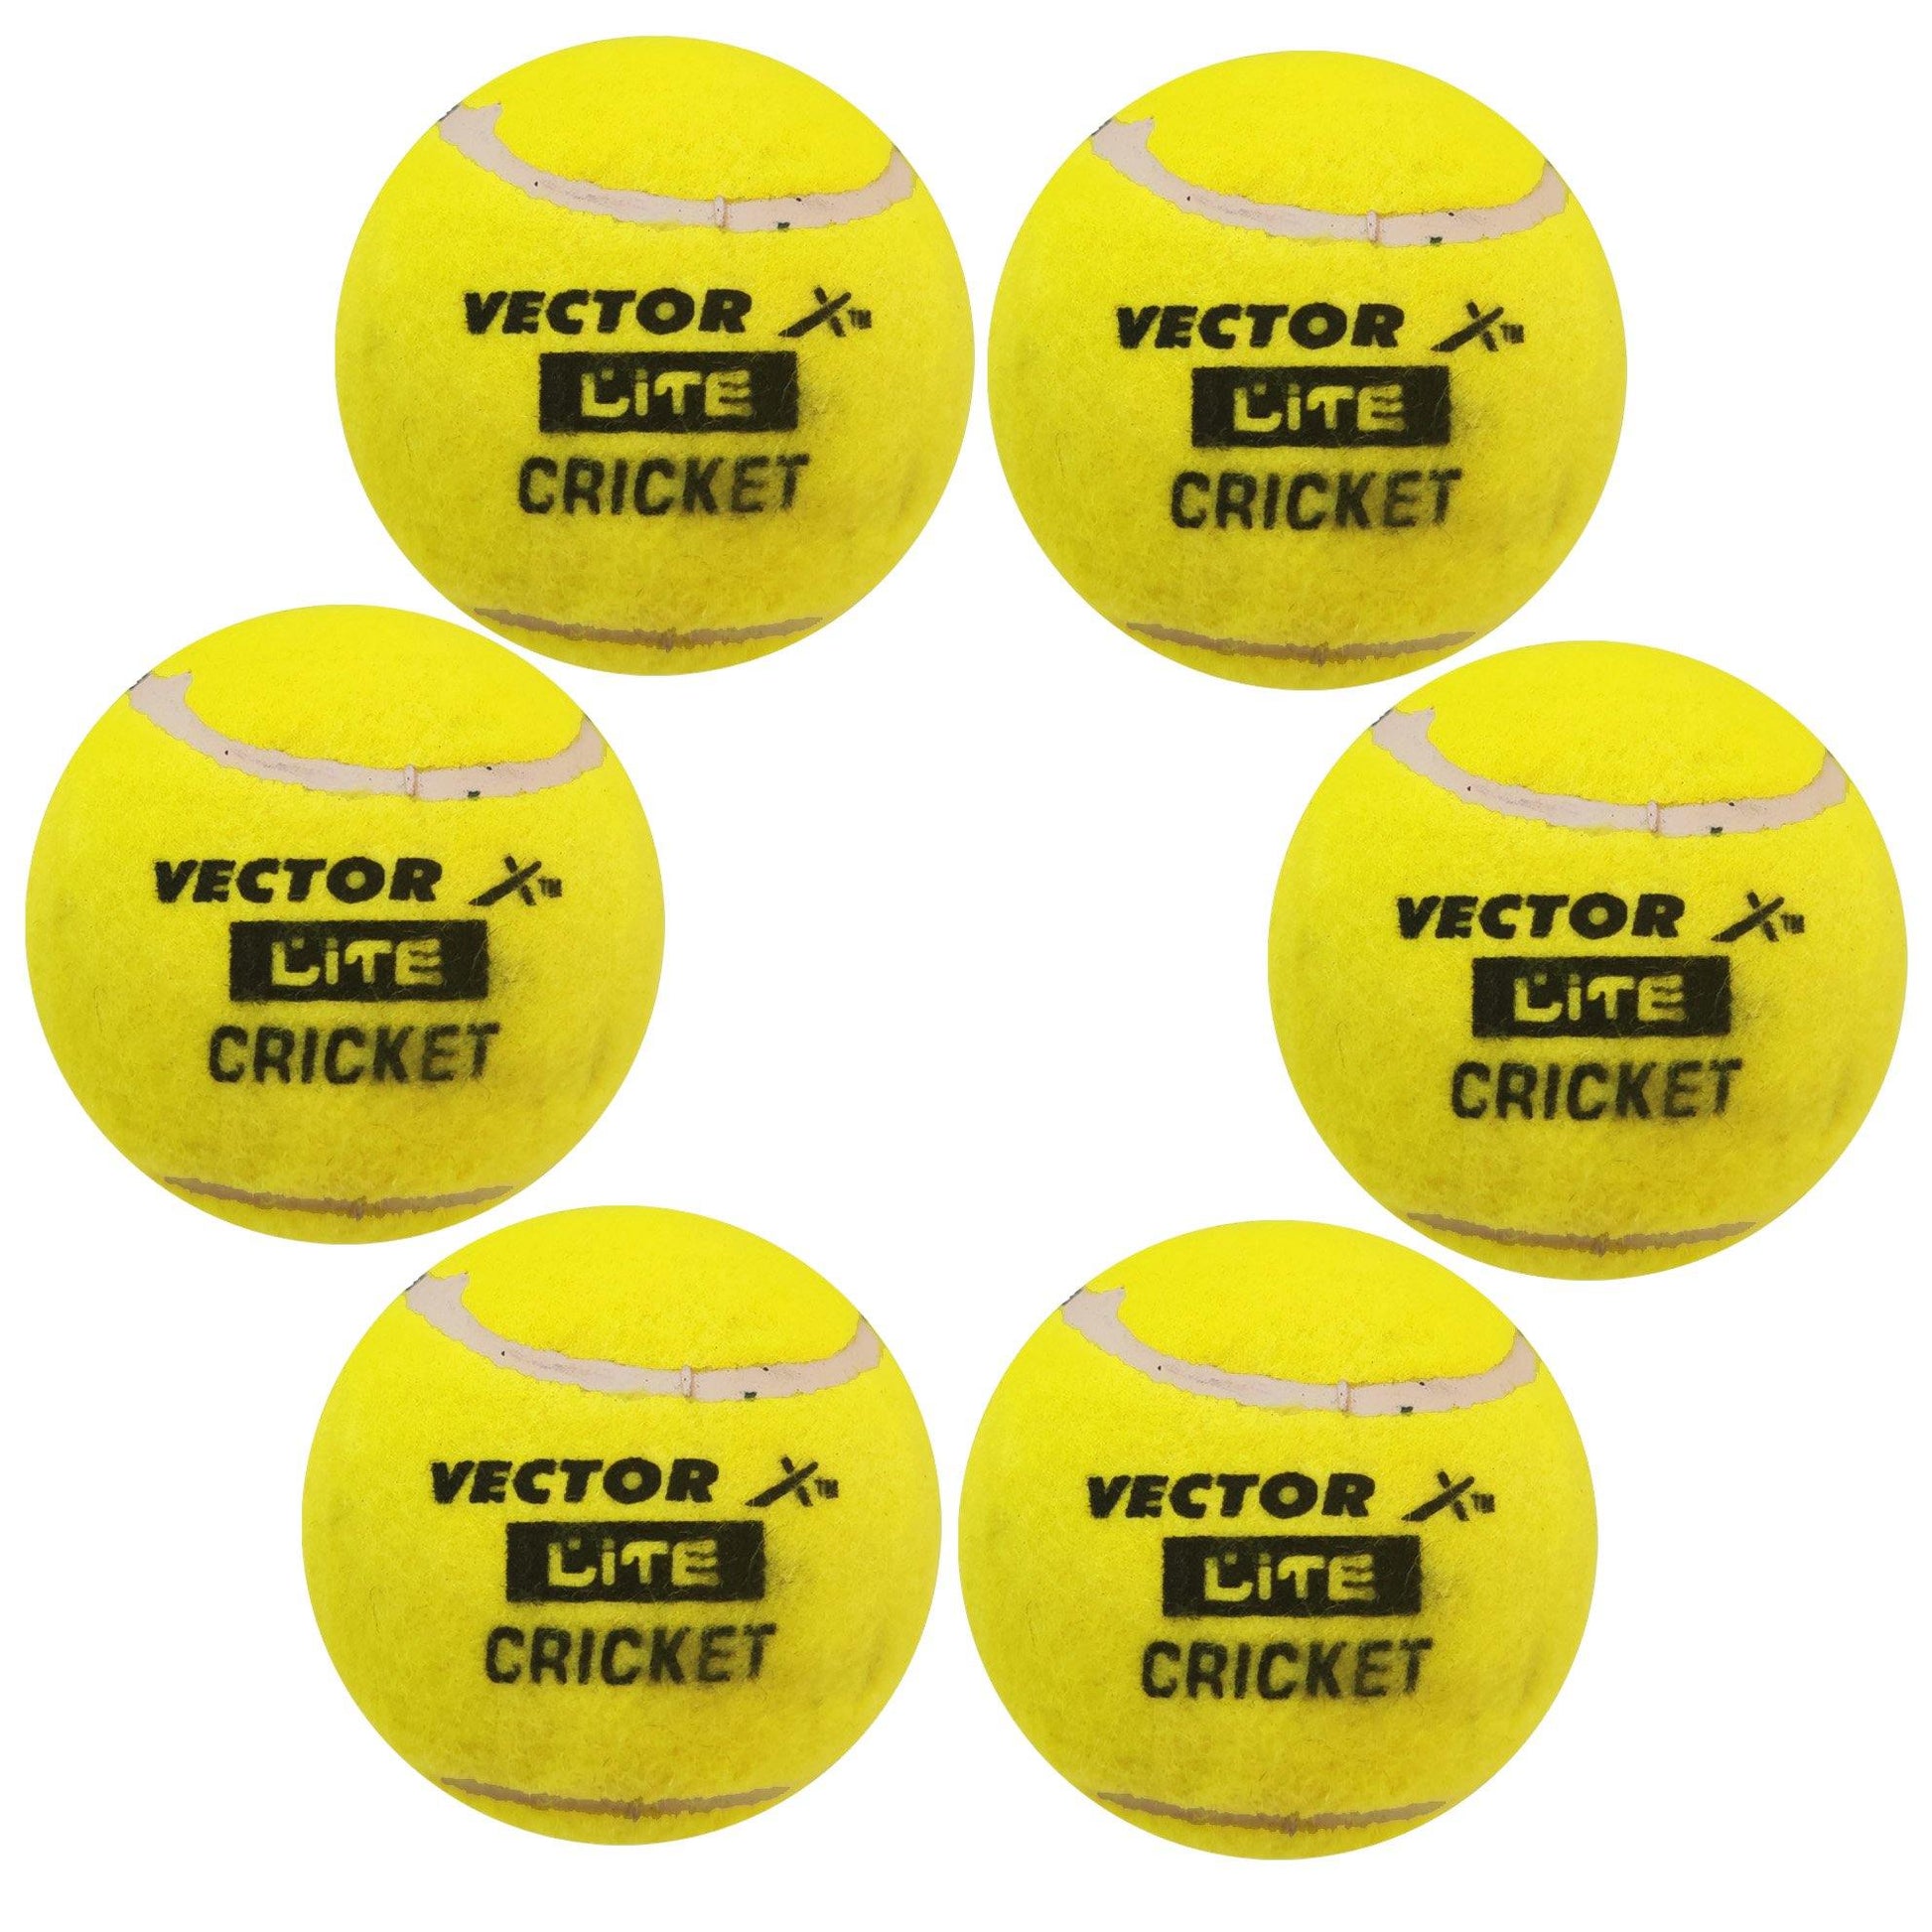 Vector X Light Tennis Cricket Ball, Pack of 6 (Yellow) - Best Price online Prokicksports.com